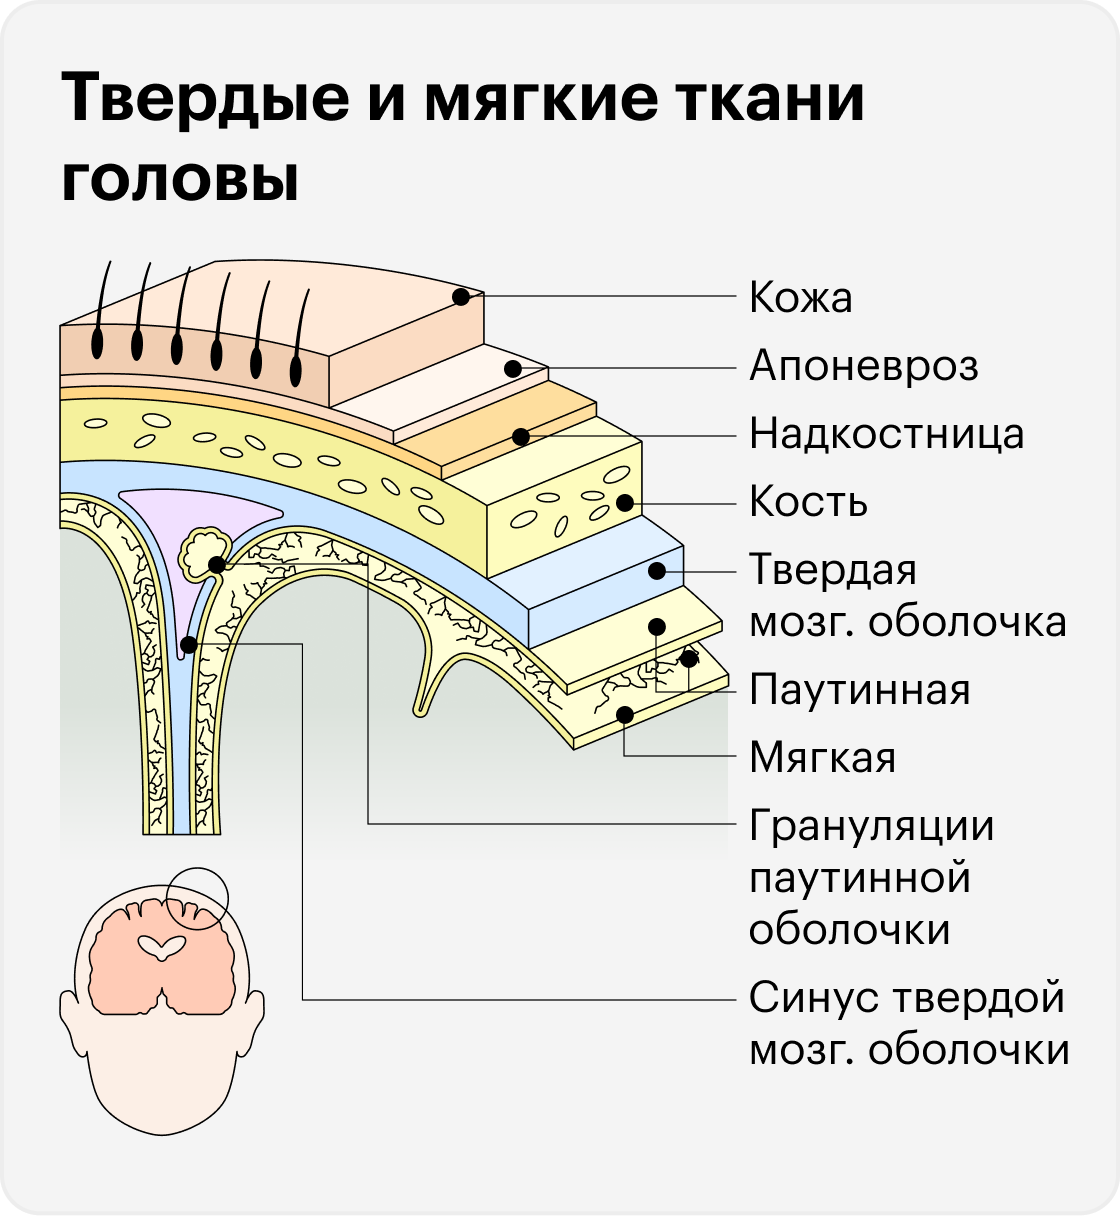 При&nbsp;проникающей черепно-мозговой травме повреждаются ткани головы вплоть до твердой мозговой оболочки